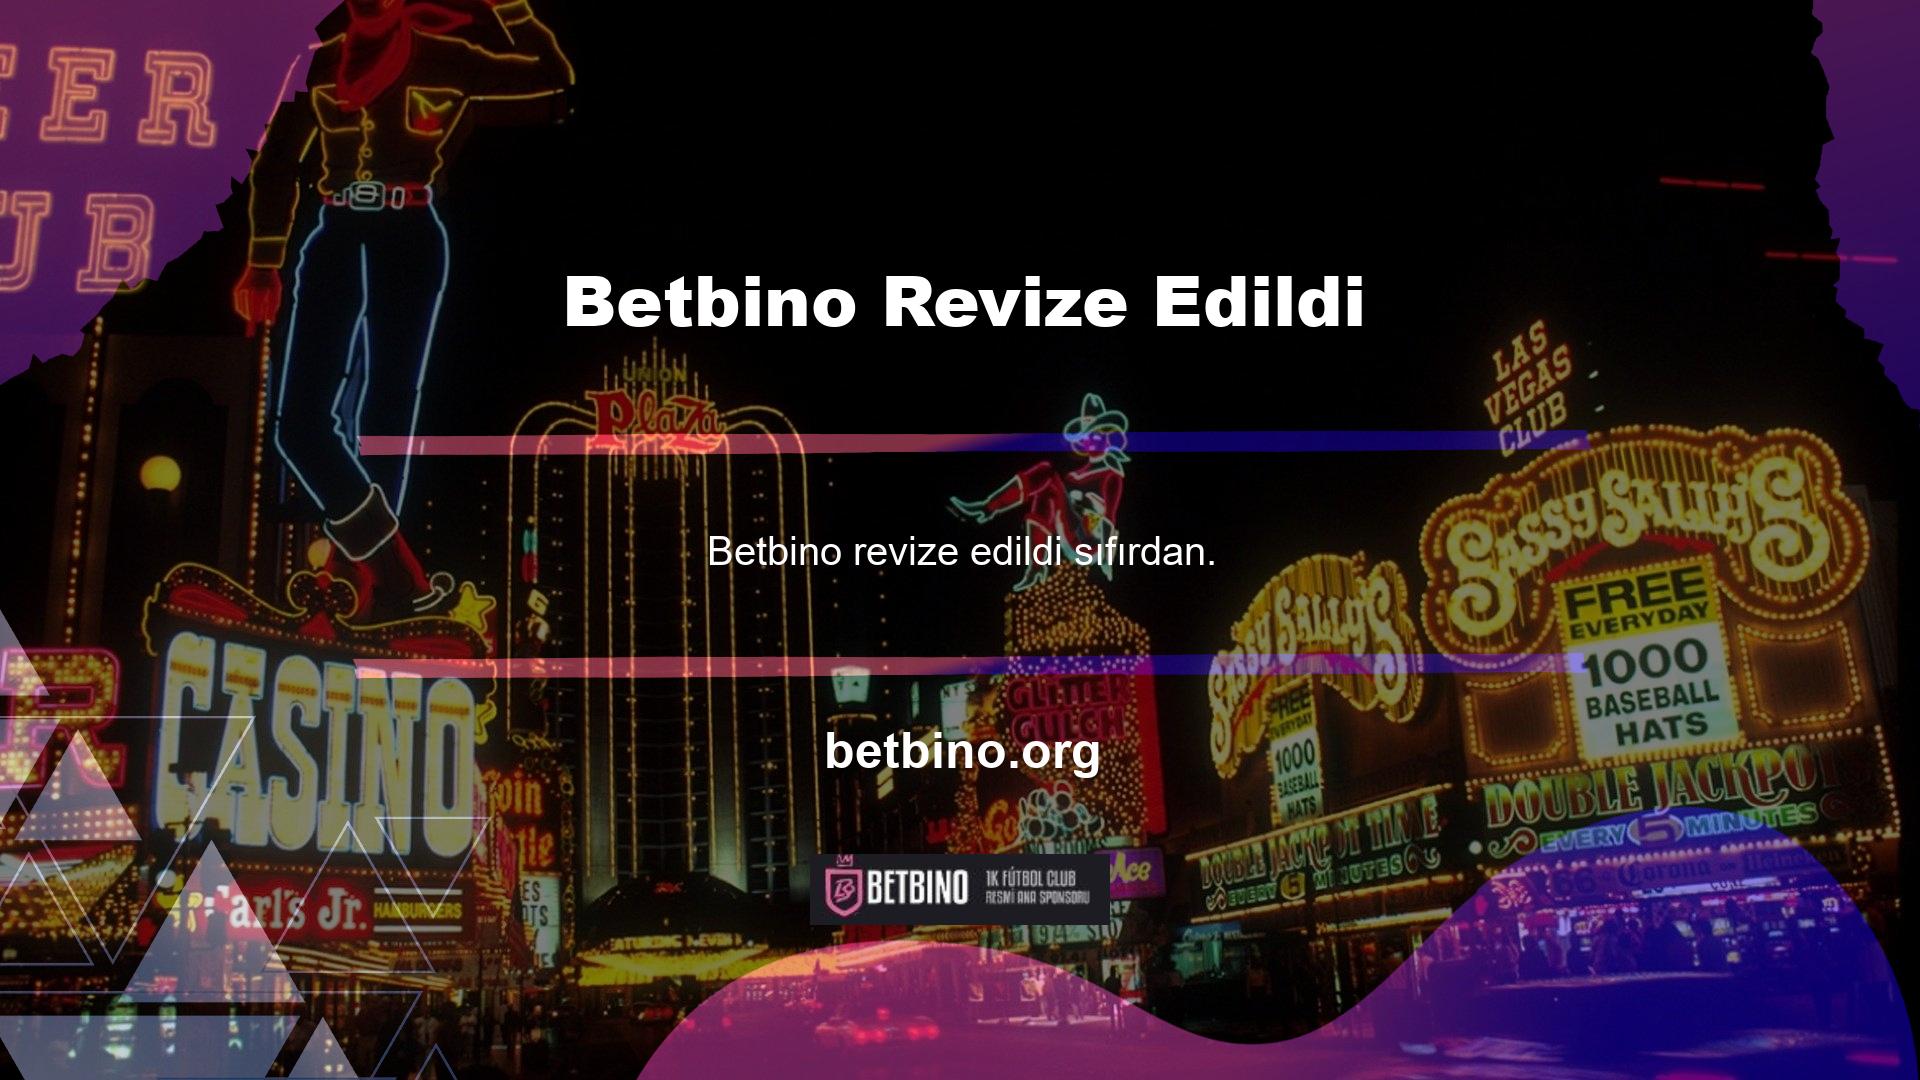 Mükemmel müşteri hizmetlerine ve düzenli kullanıcılara sahip olan Betbino oyun sitesine erişimimi kaybettikten sonra Betbino numaramı değiştirmem mümkün mü? Bu adres hala mevcut mu? Değişiklik